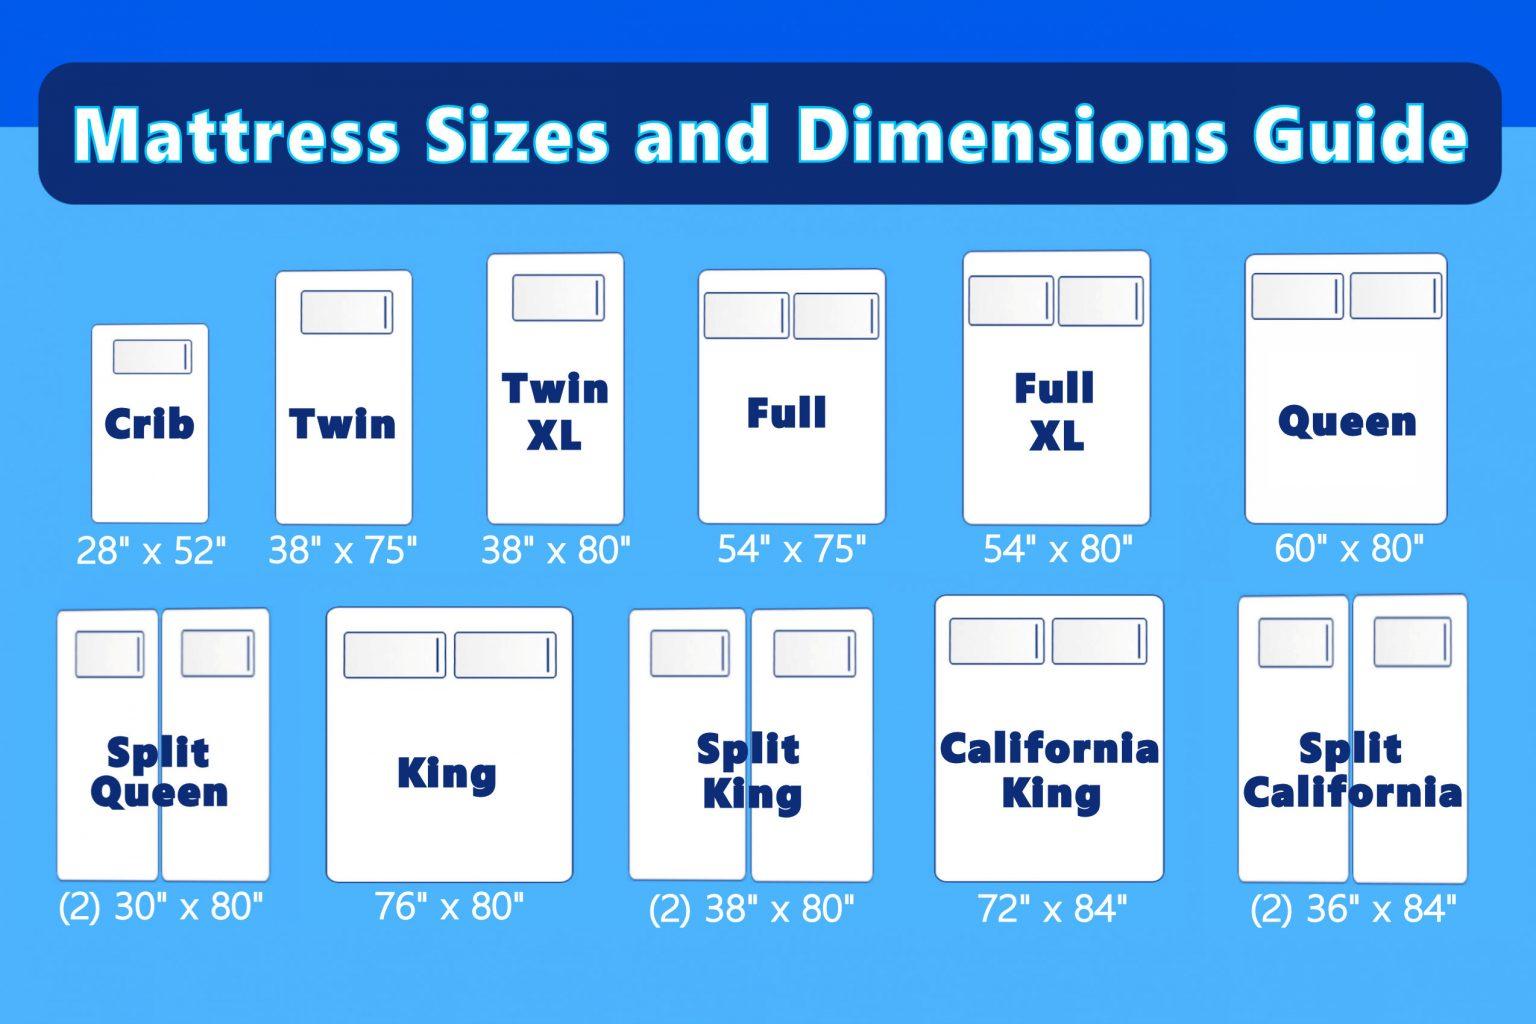 Mattress sizes